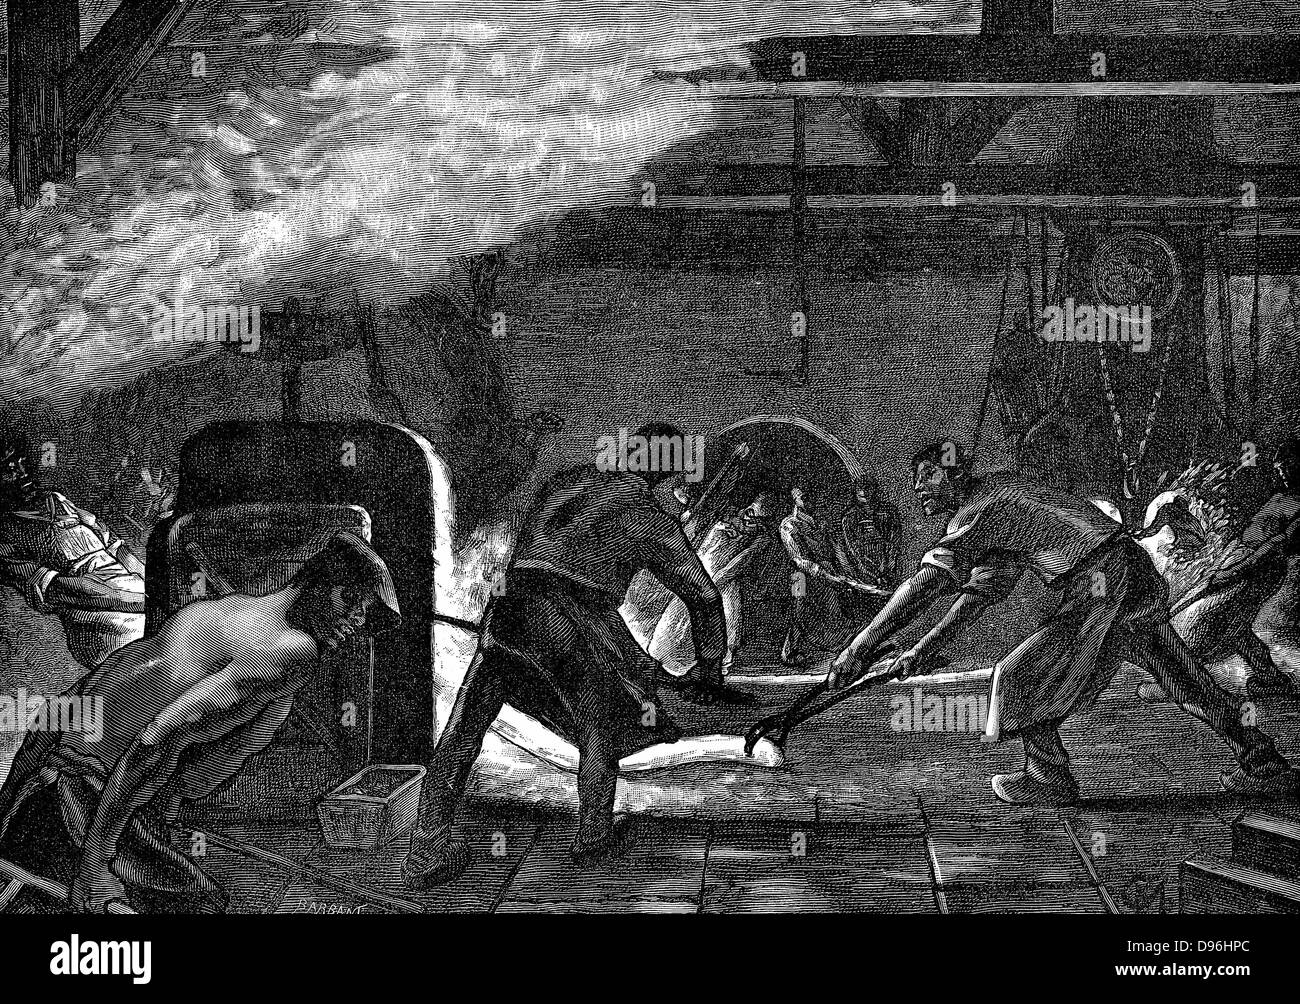 Walzwerke, Saint-Jacques arbeitet, Chatillon-Commentry Unternehmen. Männer tragen Leggins und schweres Leder Schürzen aus Kontakt mit heißem Metall zu schützen. Holzstich Paris, 1894 Stockfoto